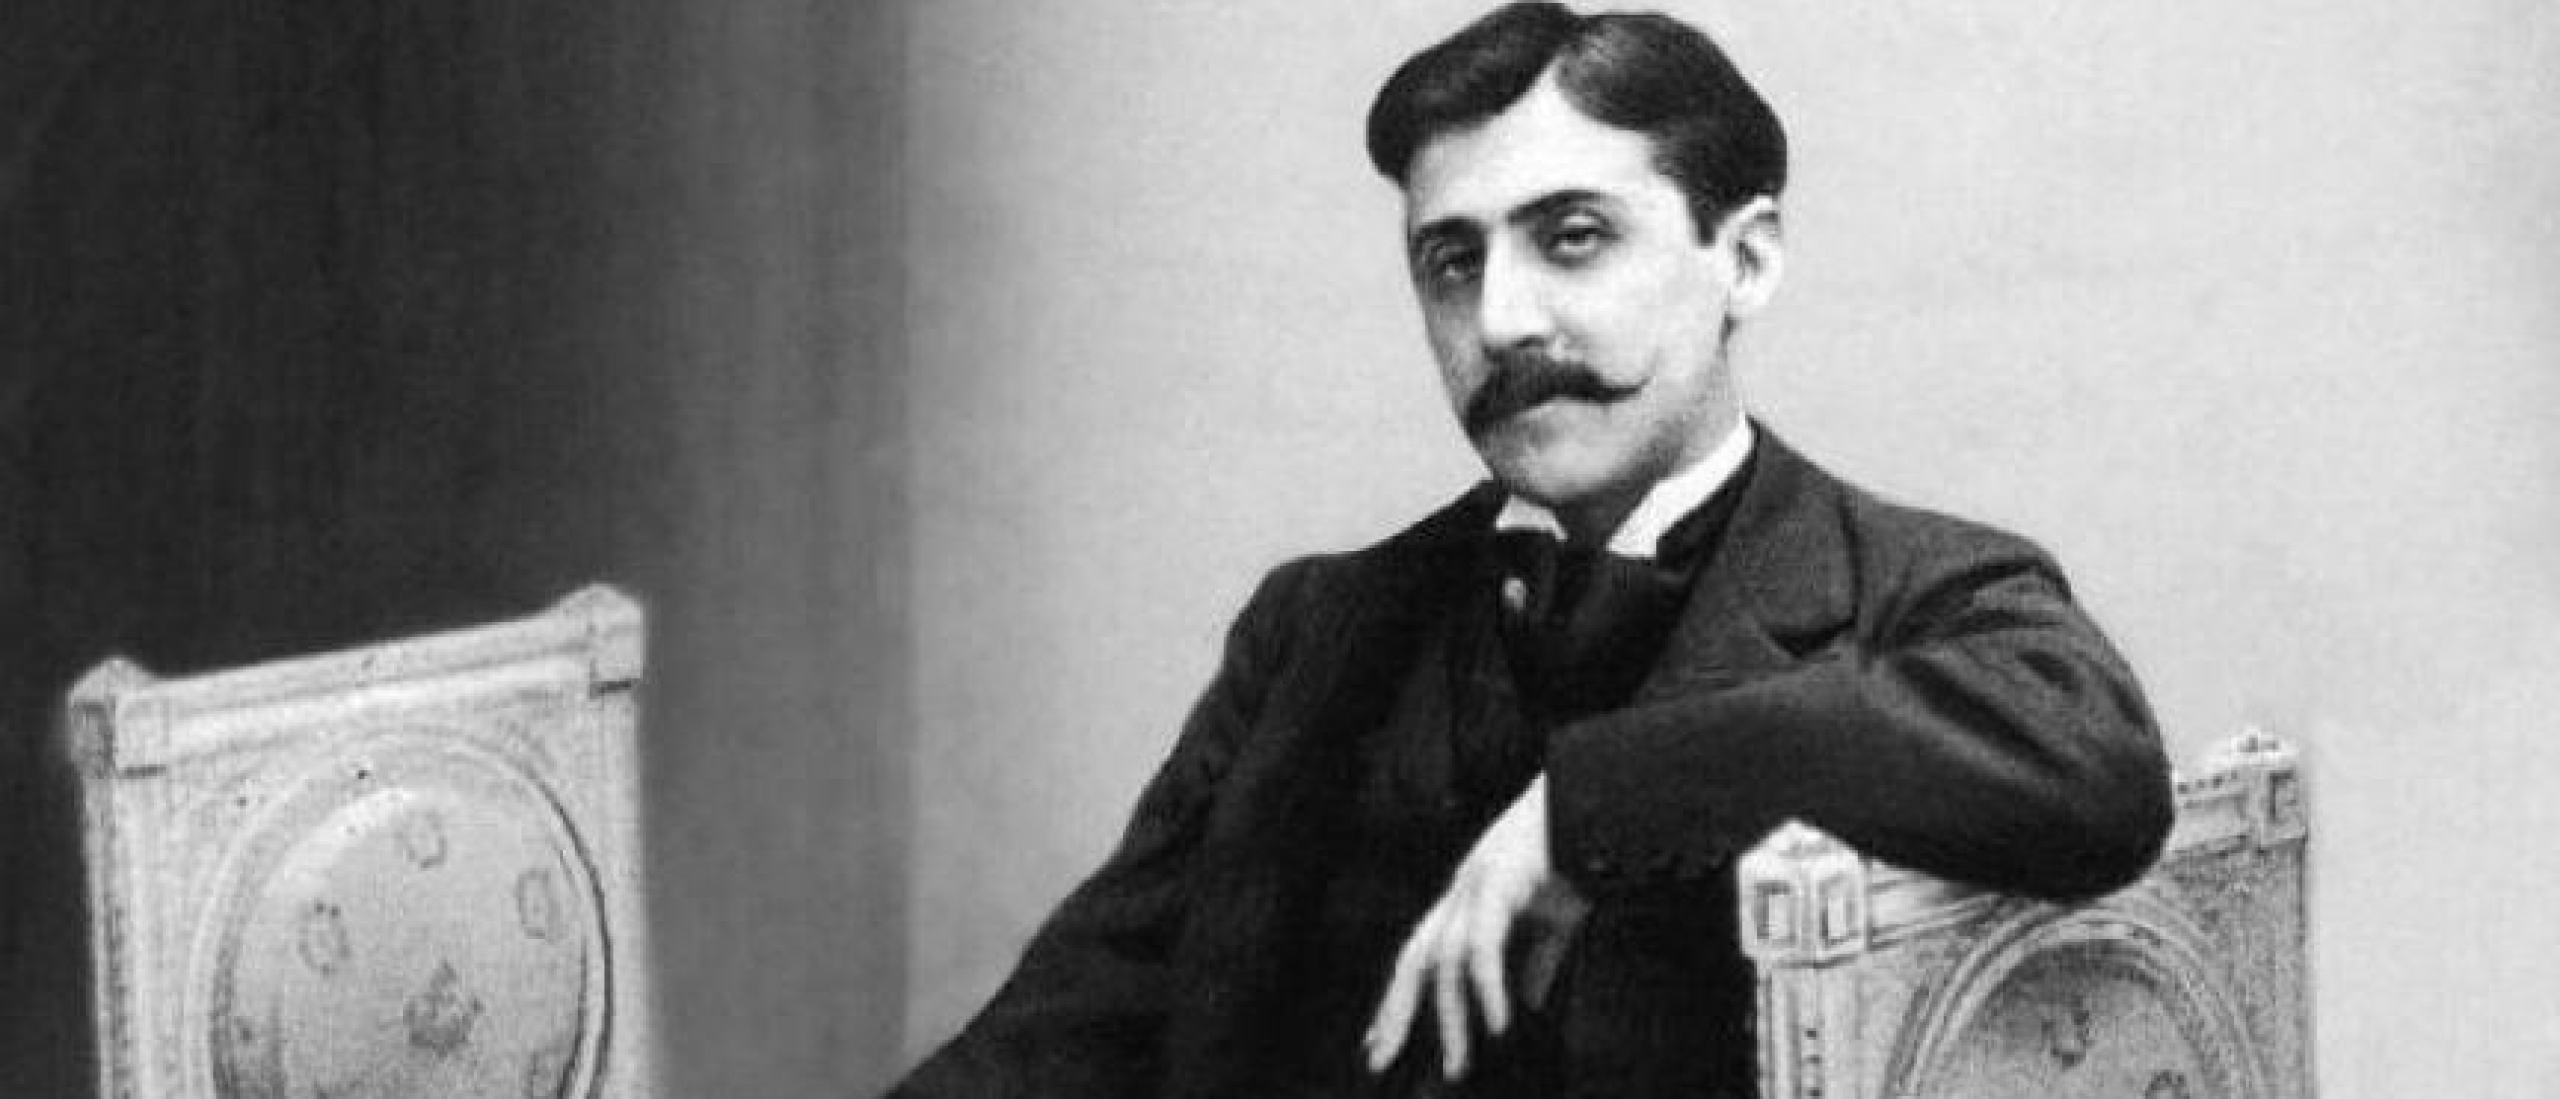 Deze vragen stelde Marcel Proust aan zijn personages